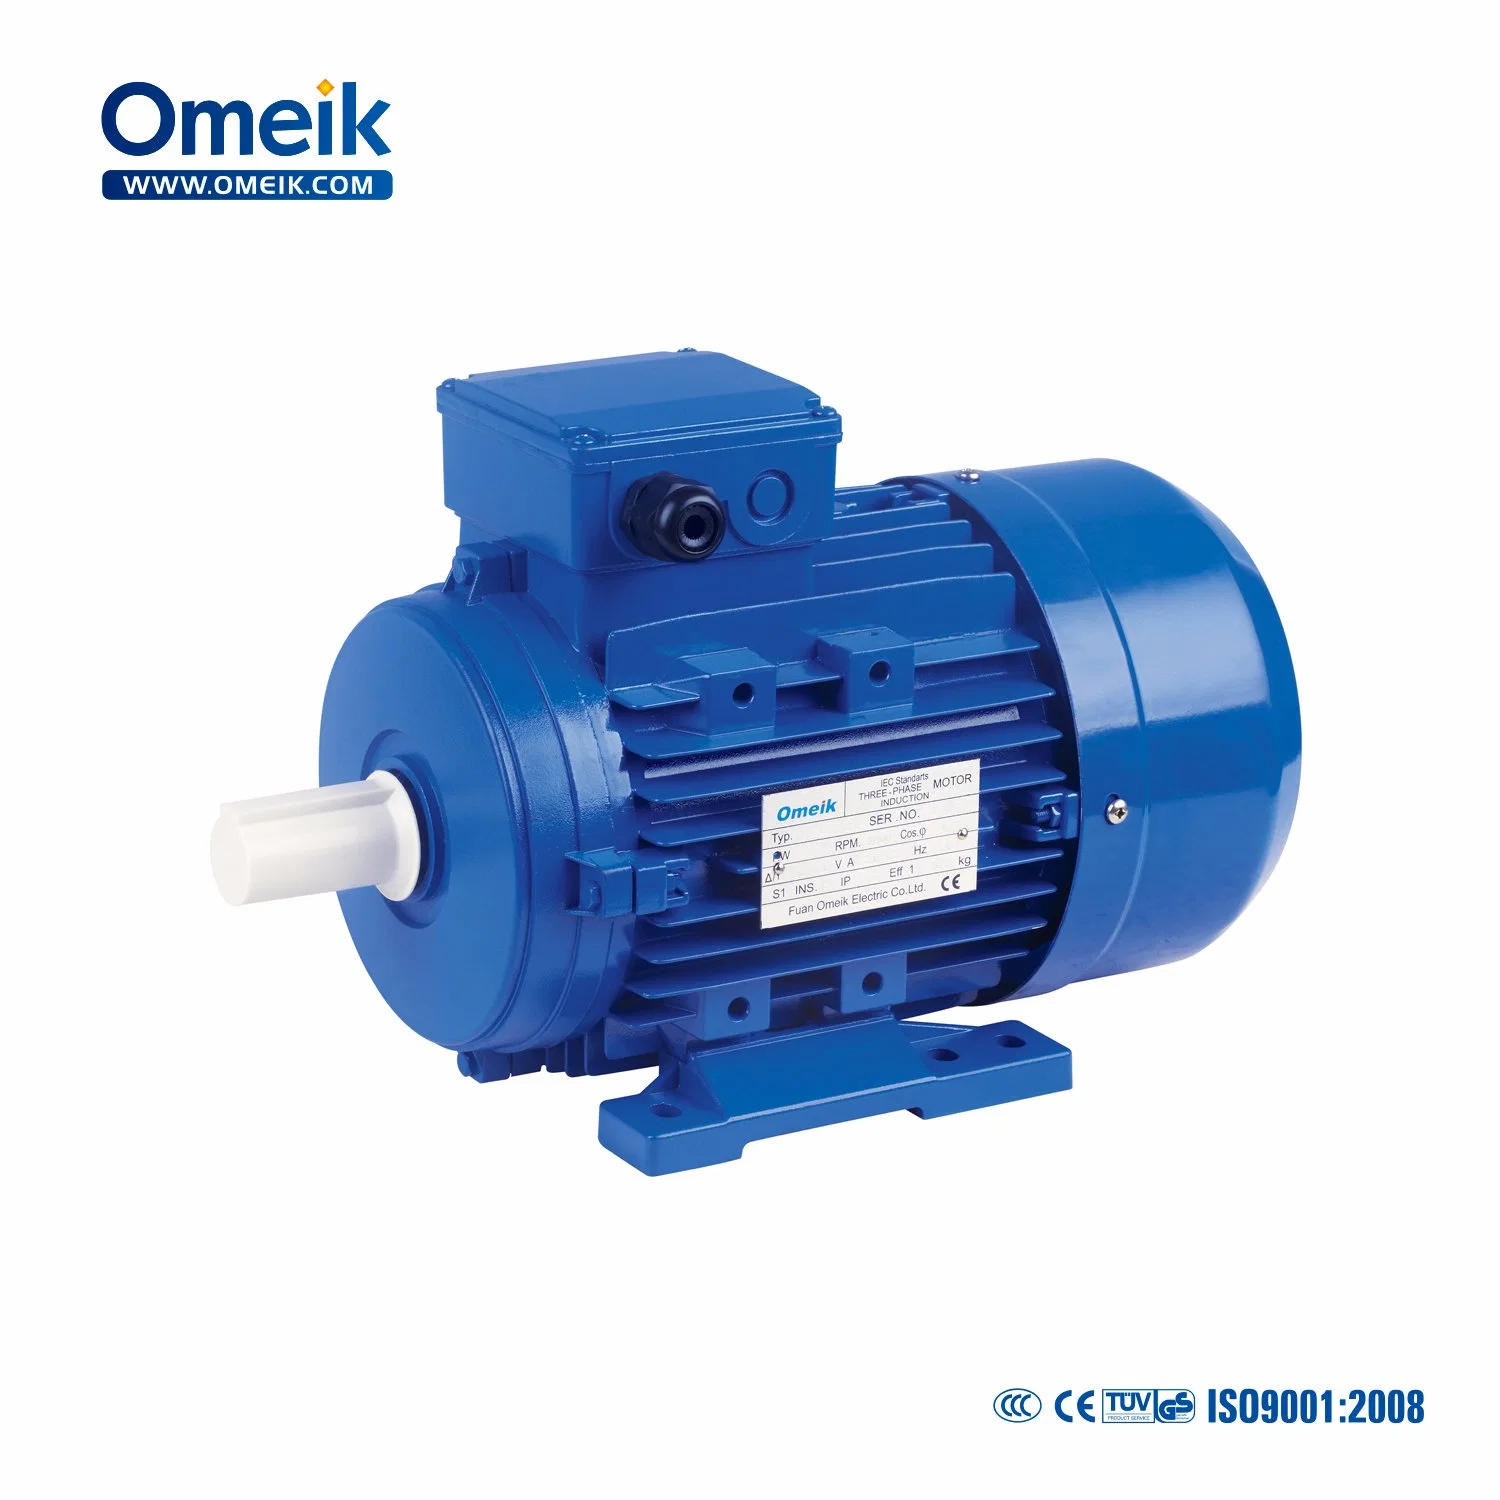 Omeik Ce de alta velocidad de alta calidad de IE2, Motor de inducción asincrónica para compresor de aire